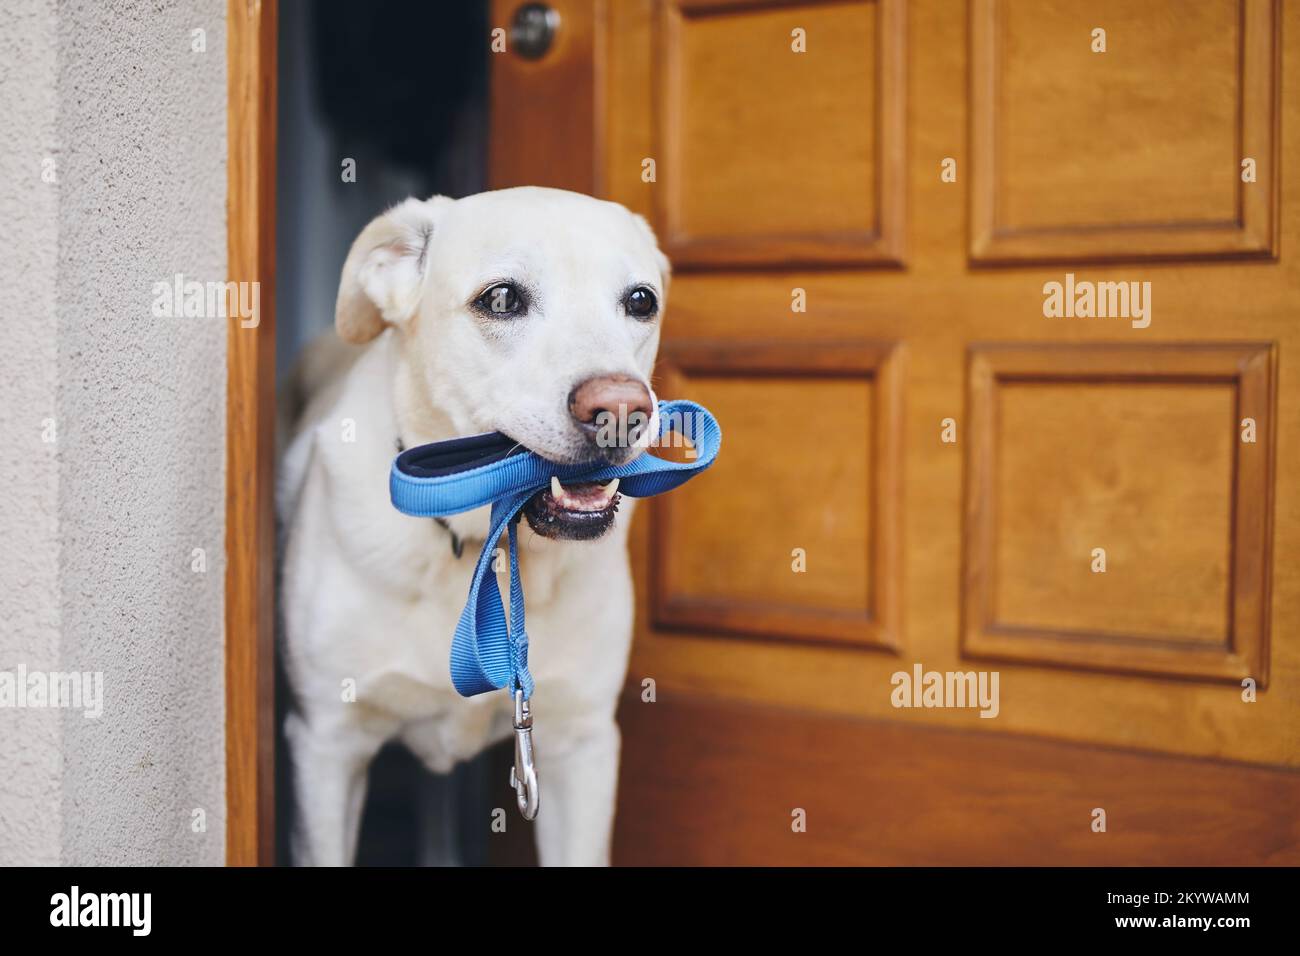 Süßer Hund, der auf einen Gang in der Haustür wartet. Labrador Retriever hält Leine im Mund. Stockfoto